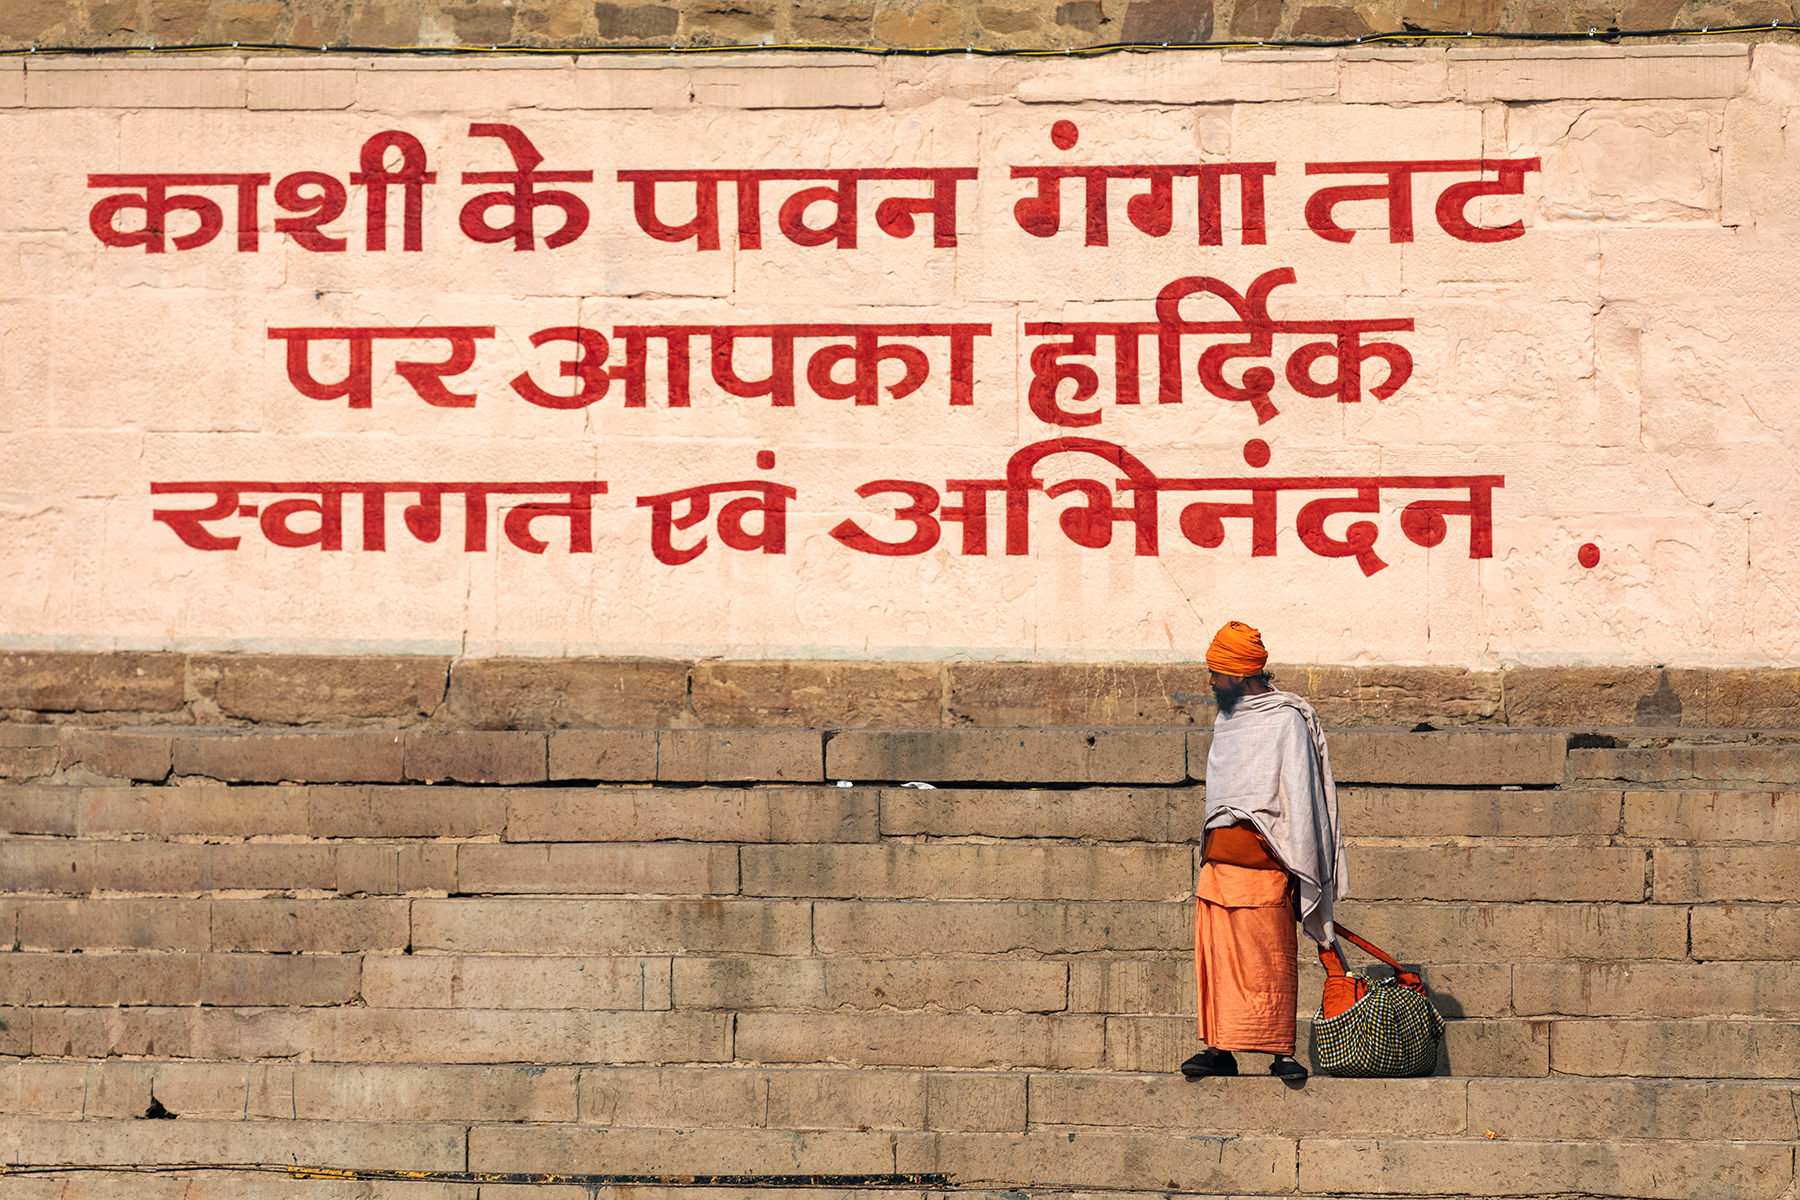 Welcome to Varanasi...